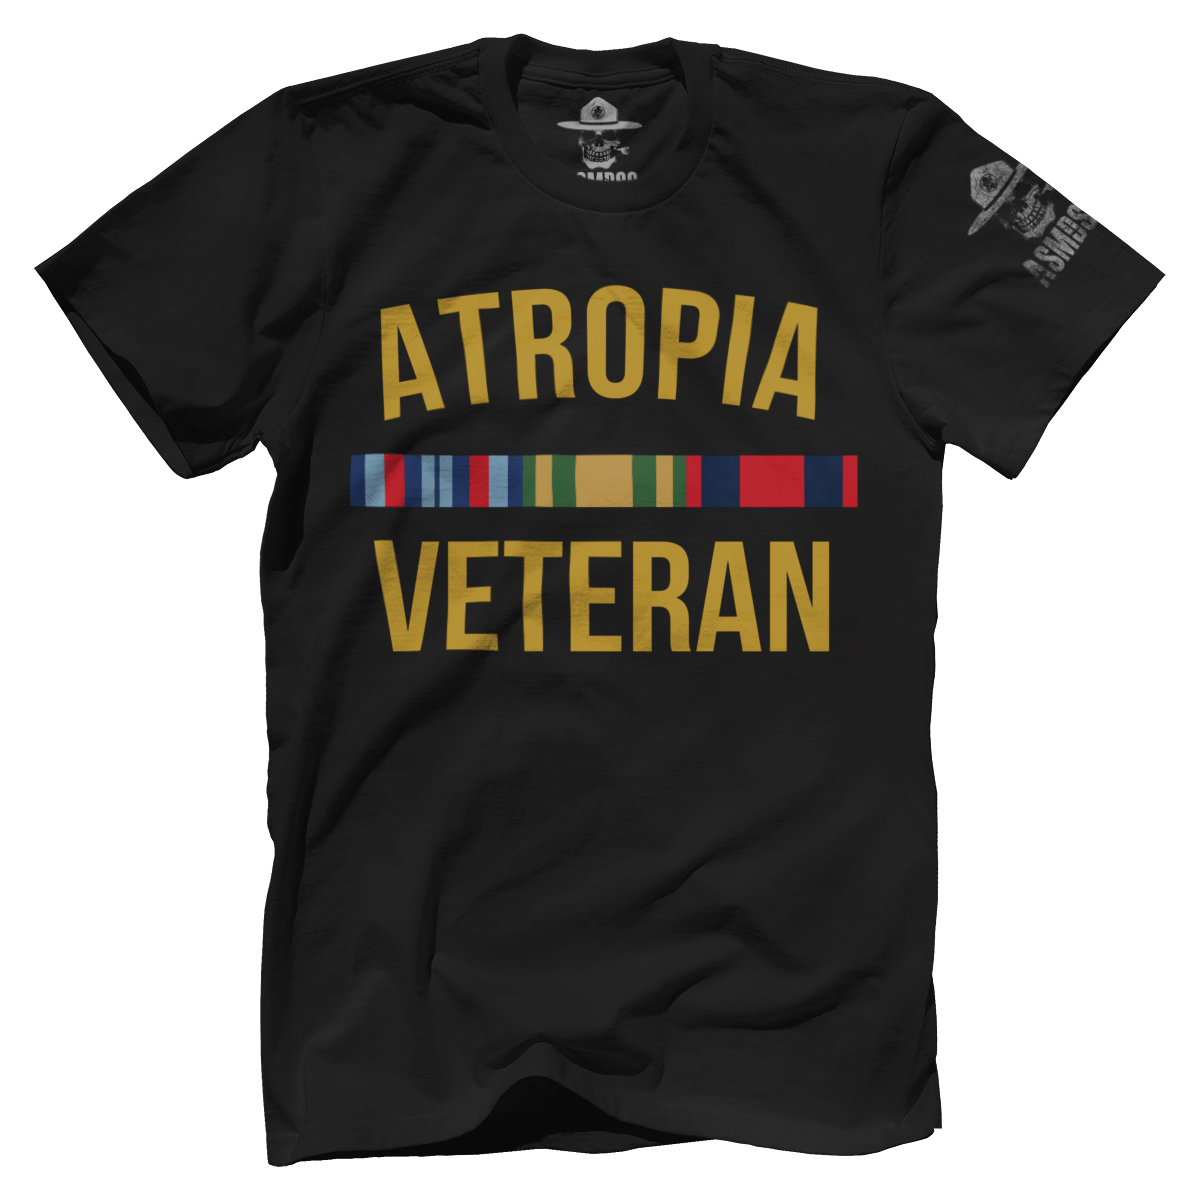 Atropia Veteran